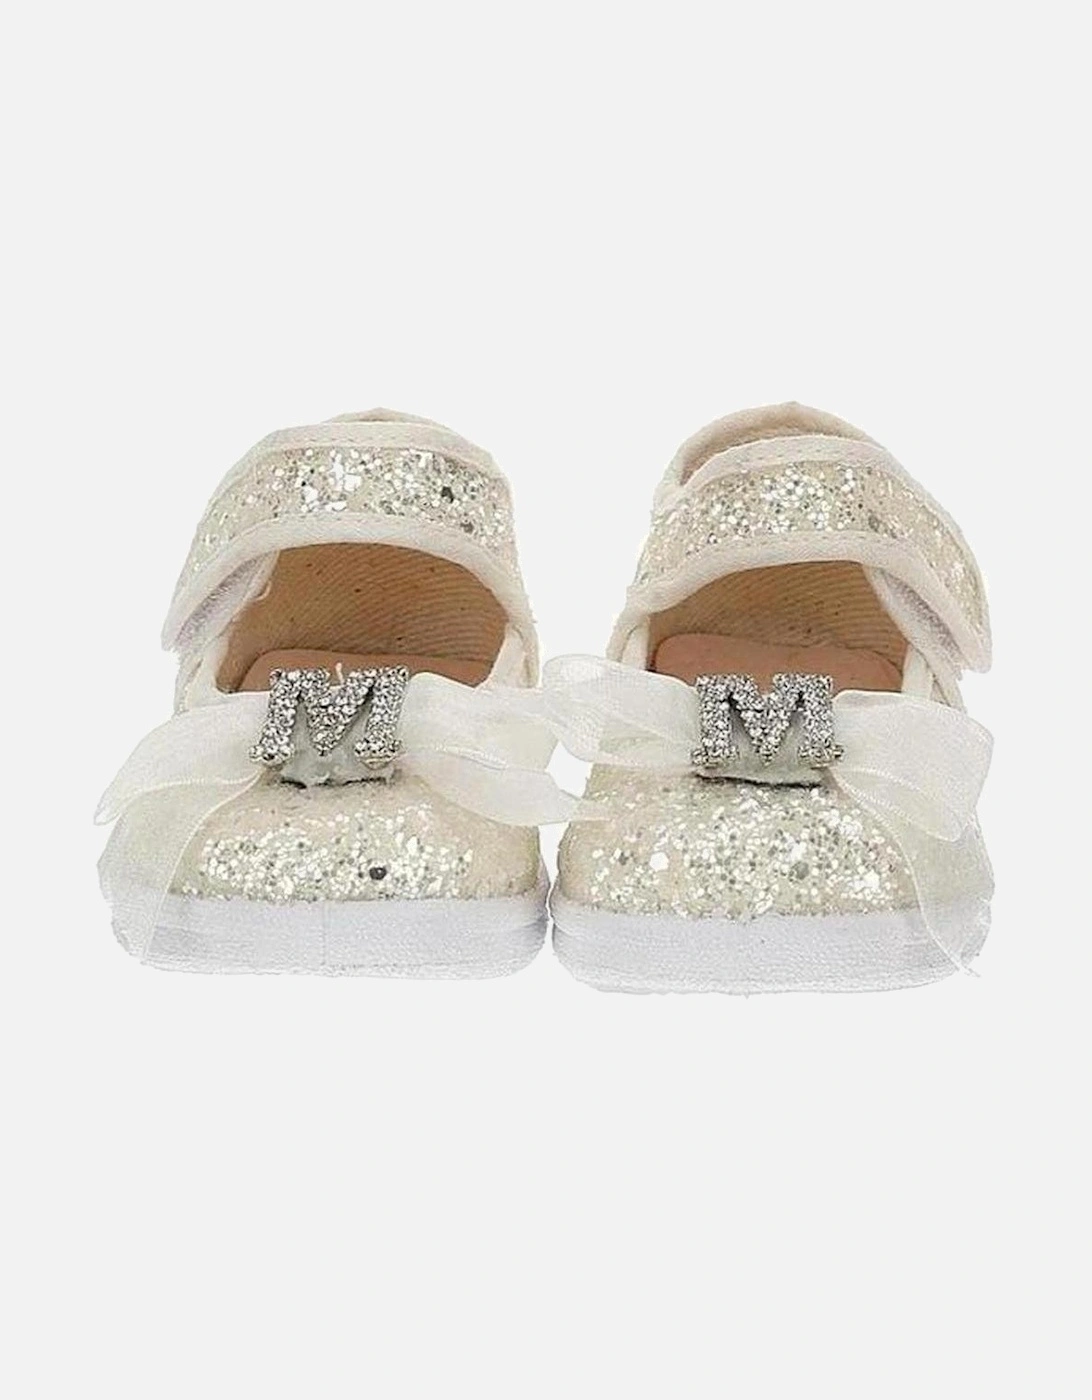 Girls White Glitter Ballerina Shoes